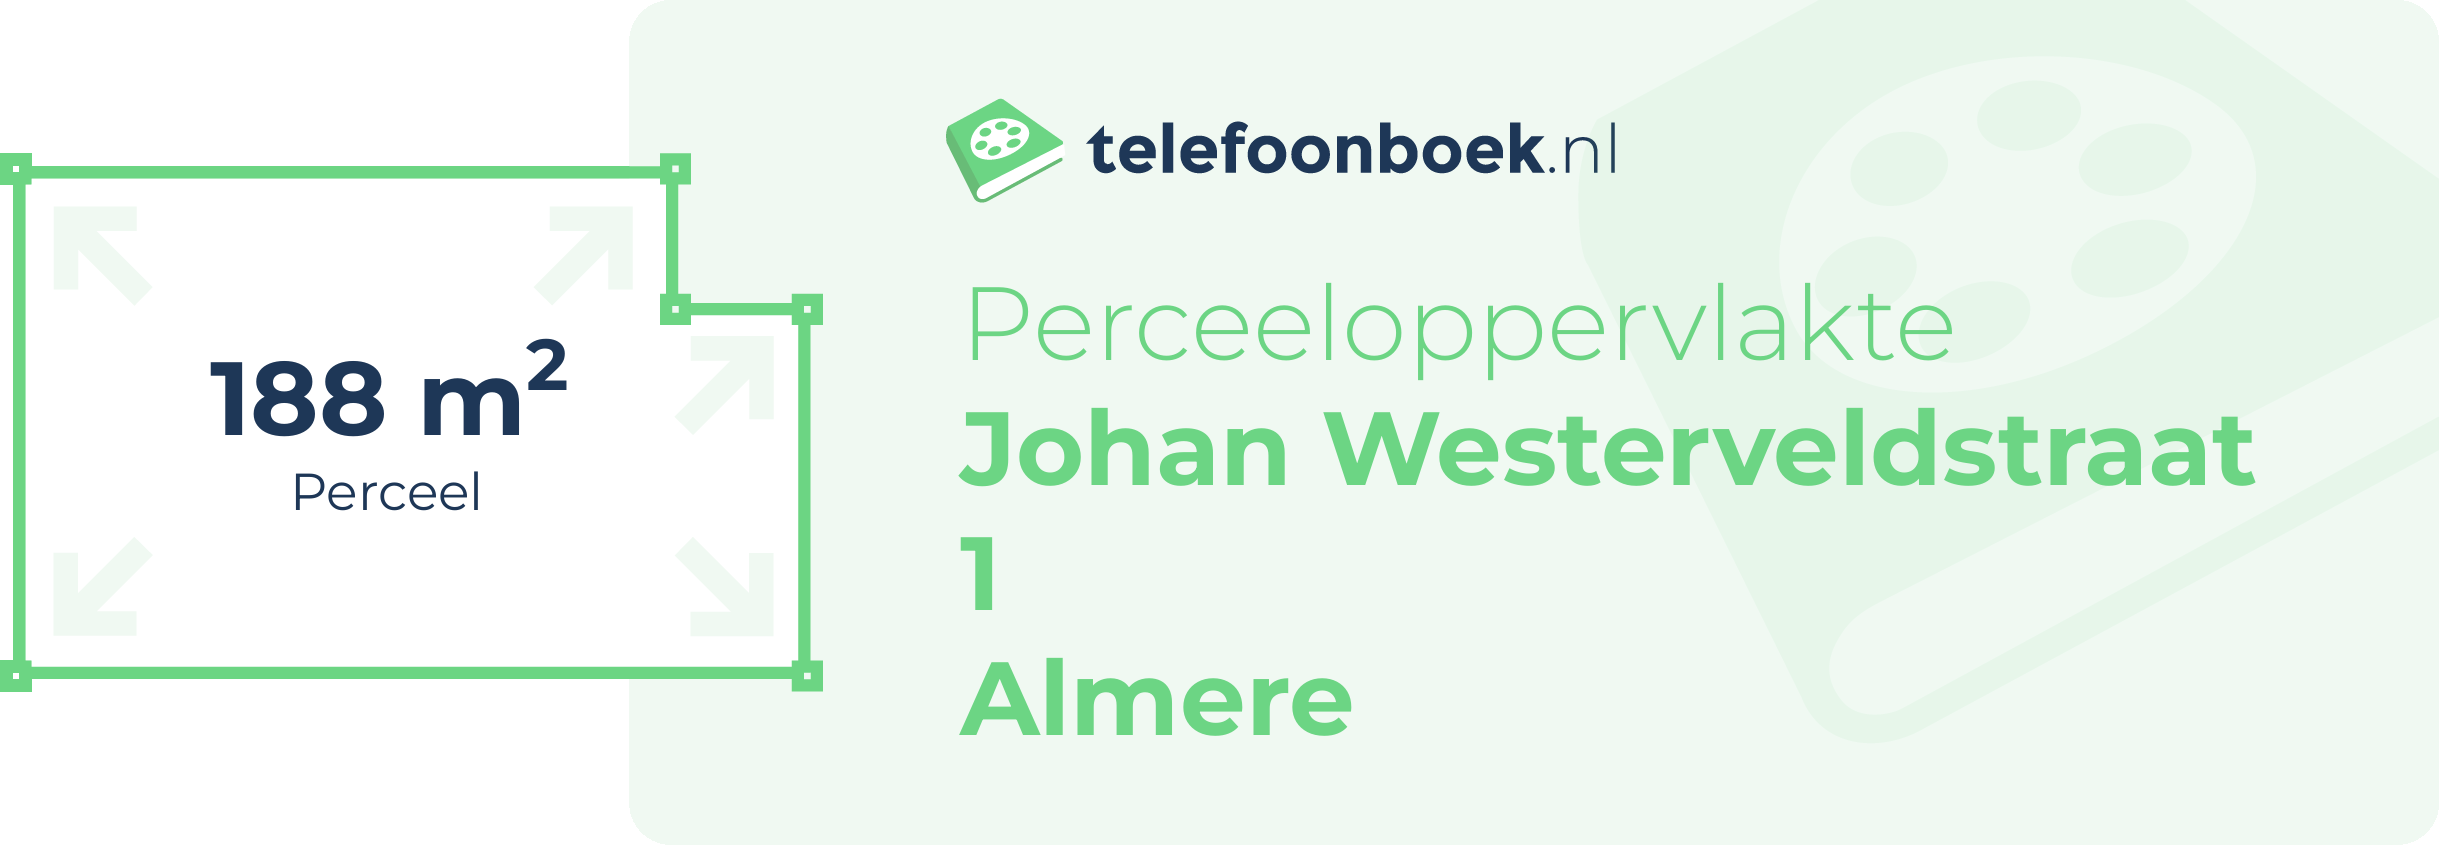 Perceeloppervlakte Johan Westerveldstraat 1 Almere